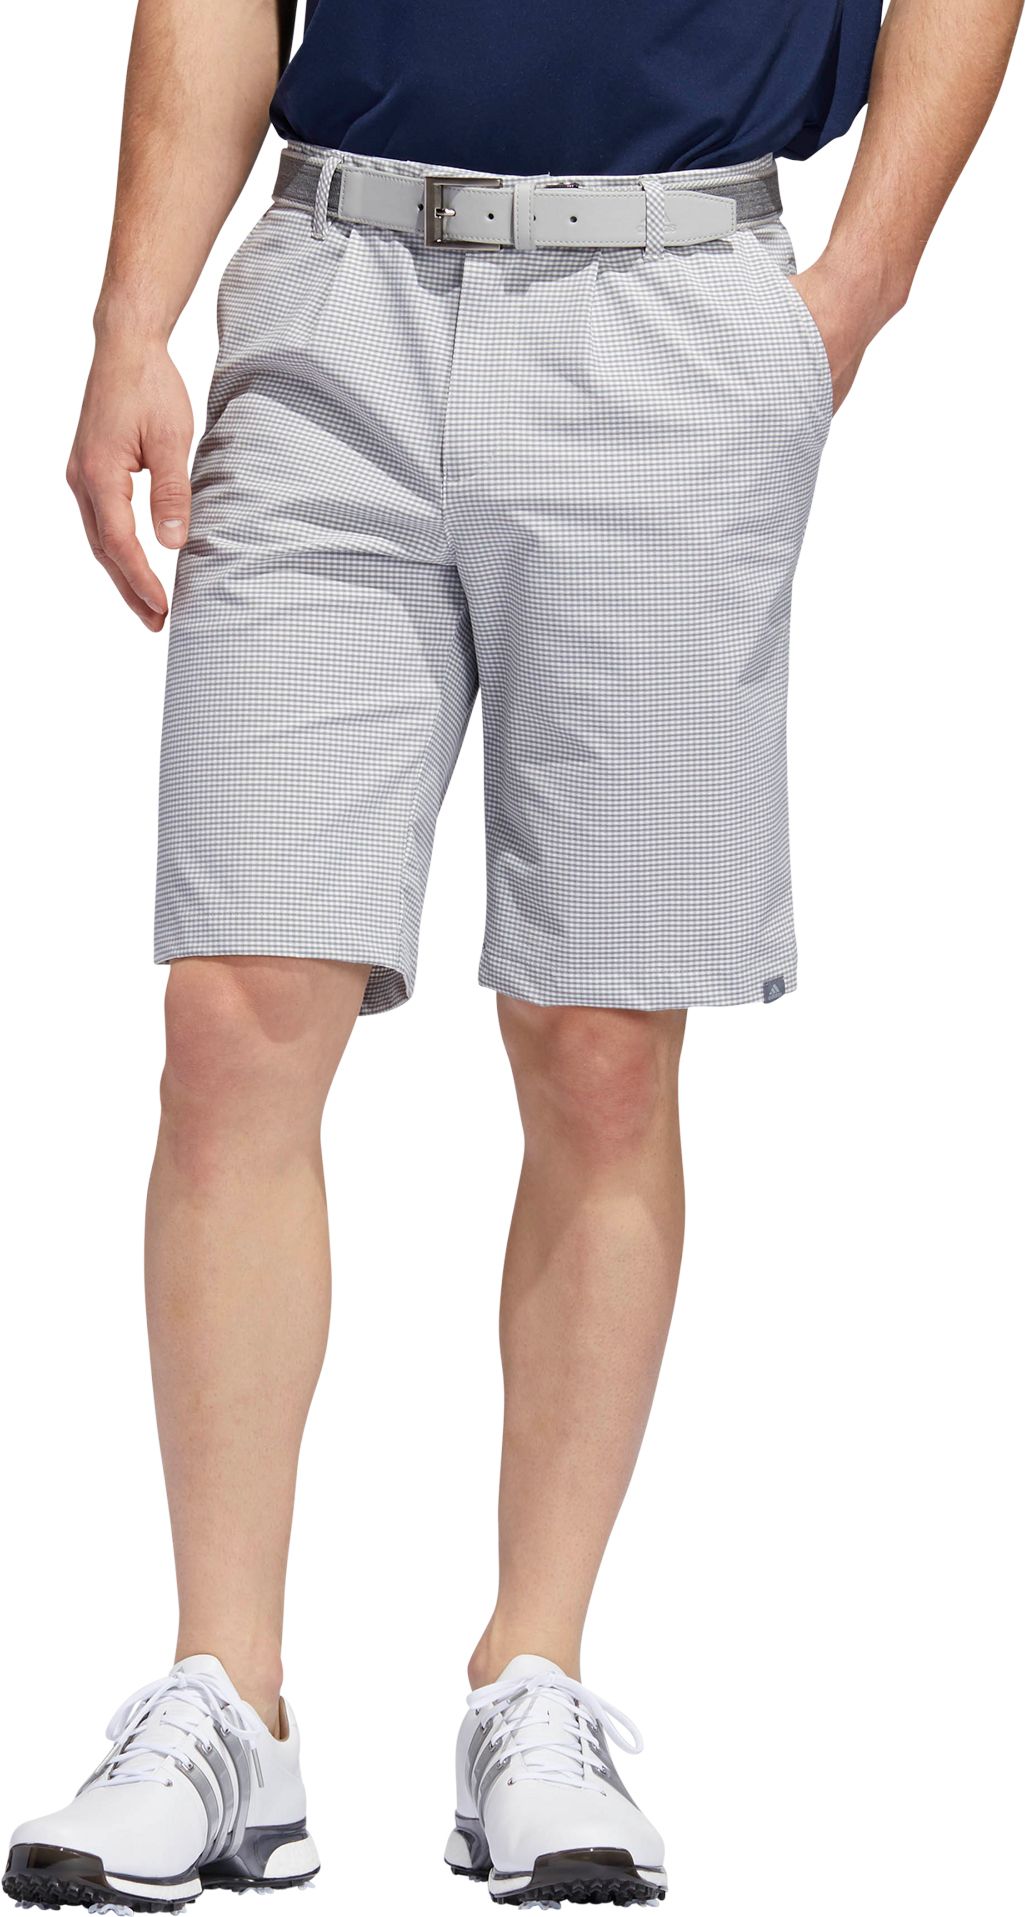 adidas mens ultimate 365 golf shorts